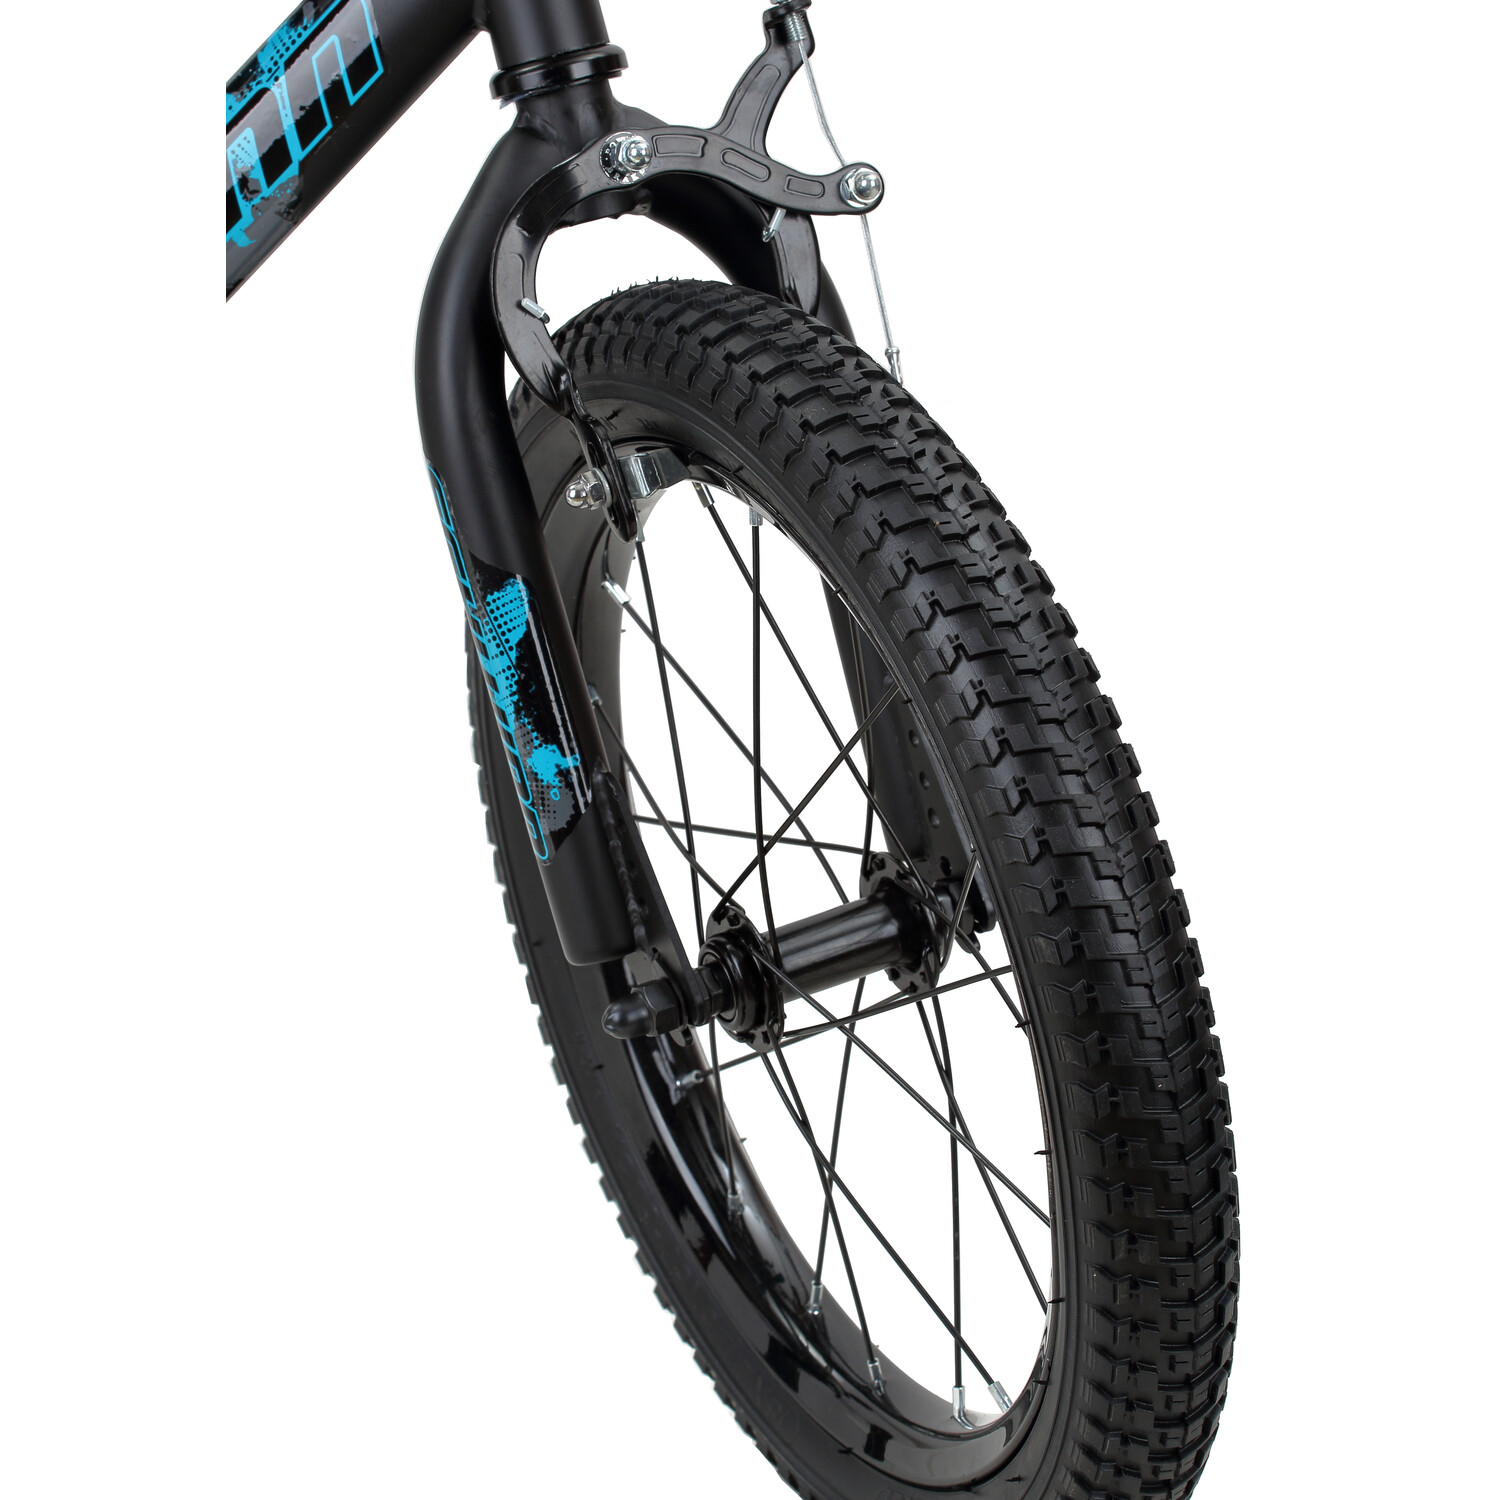 Schwinn Flywheel Smartstart Bike, 16 inch Wheels, Single Speed, Black/Blue - image 2 of 4